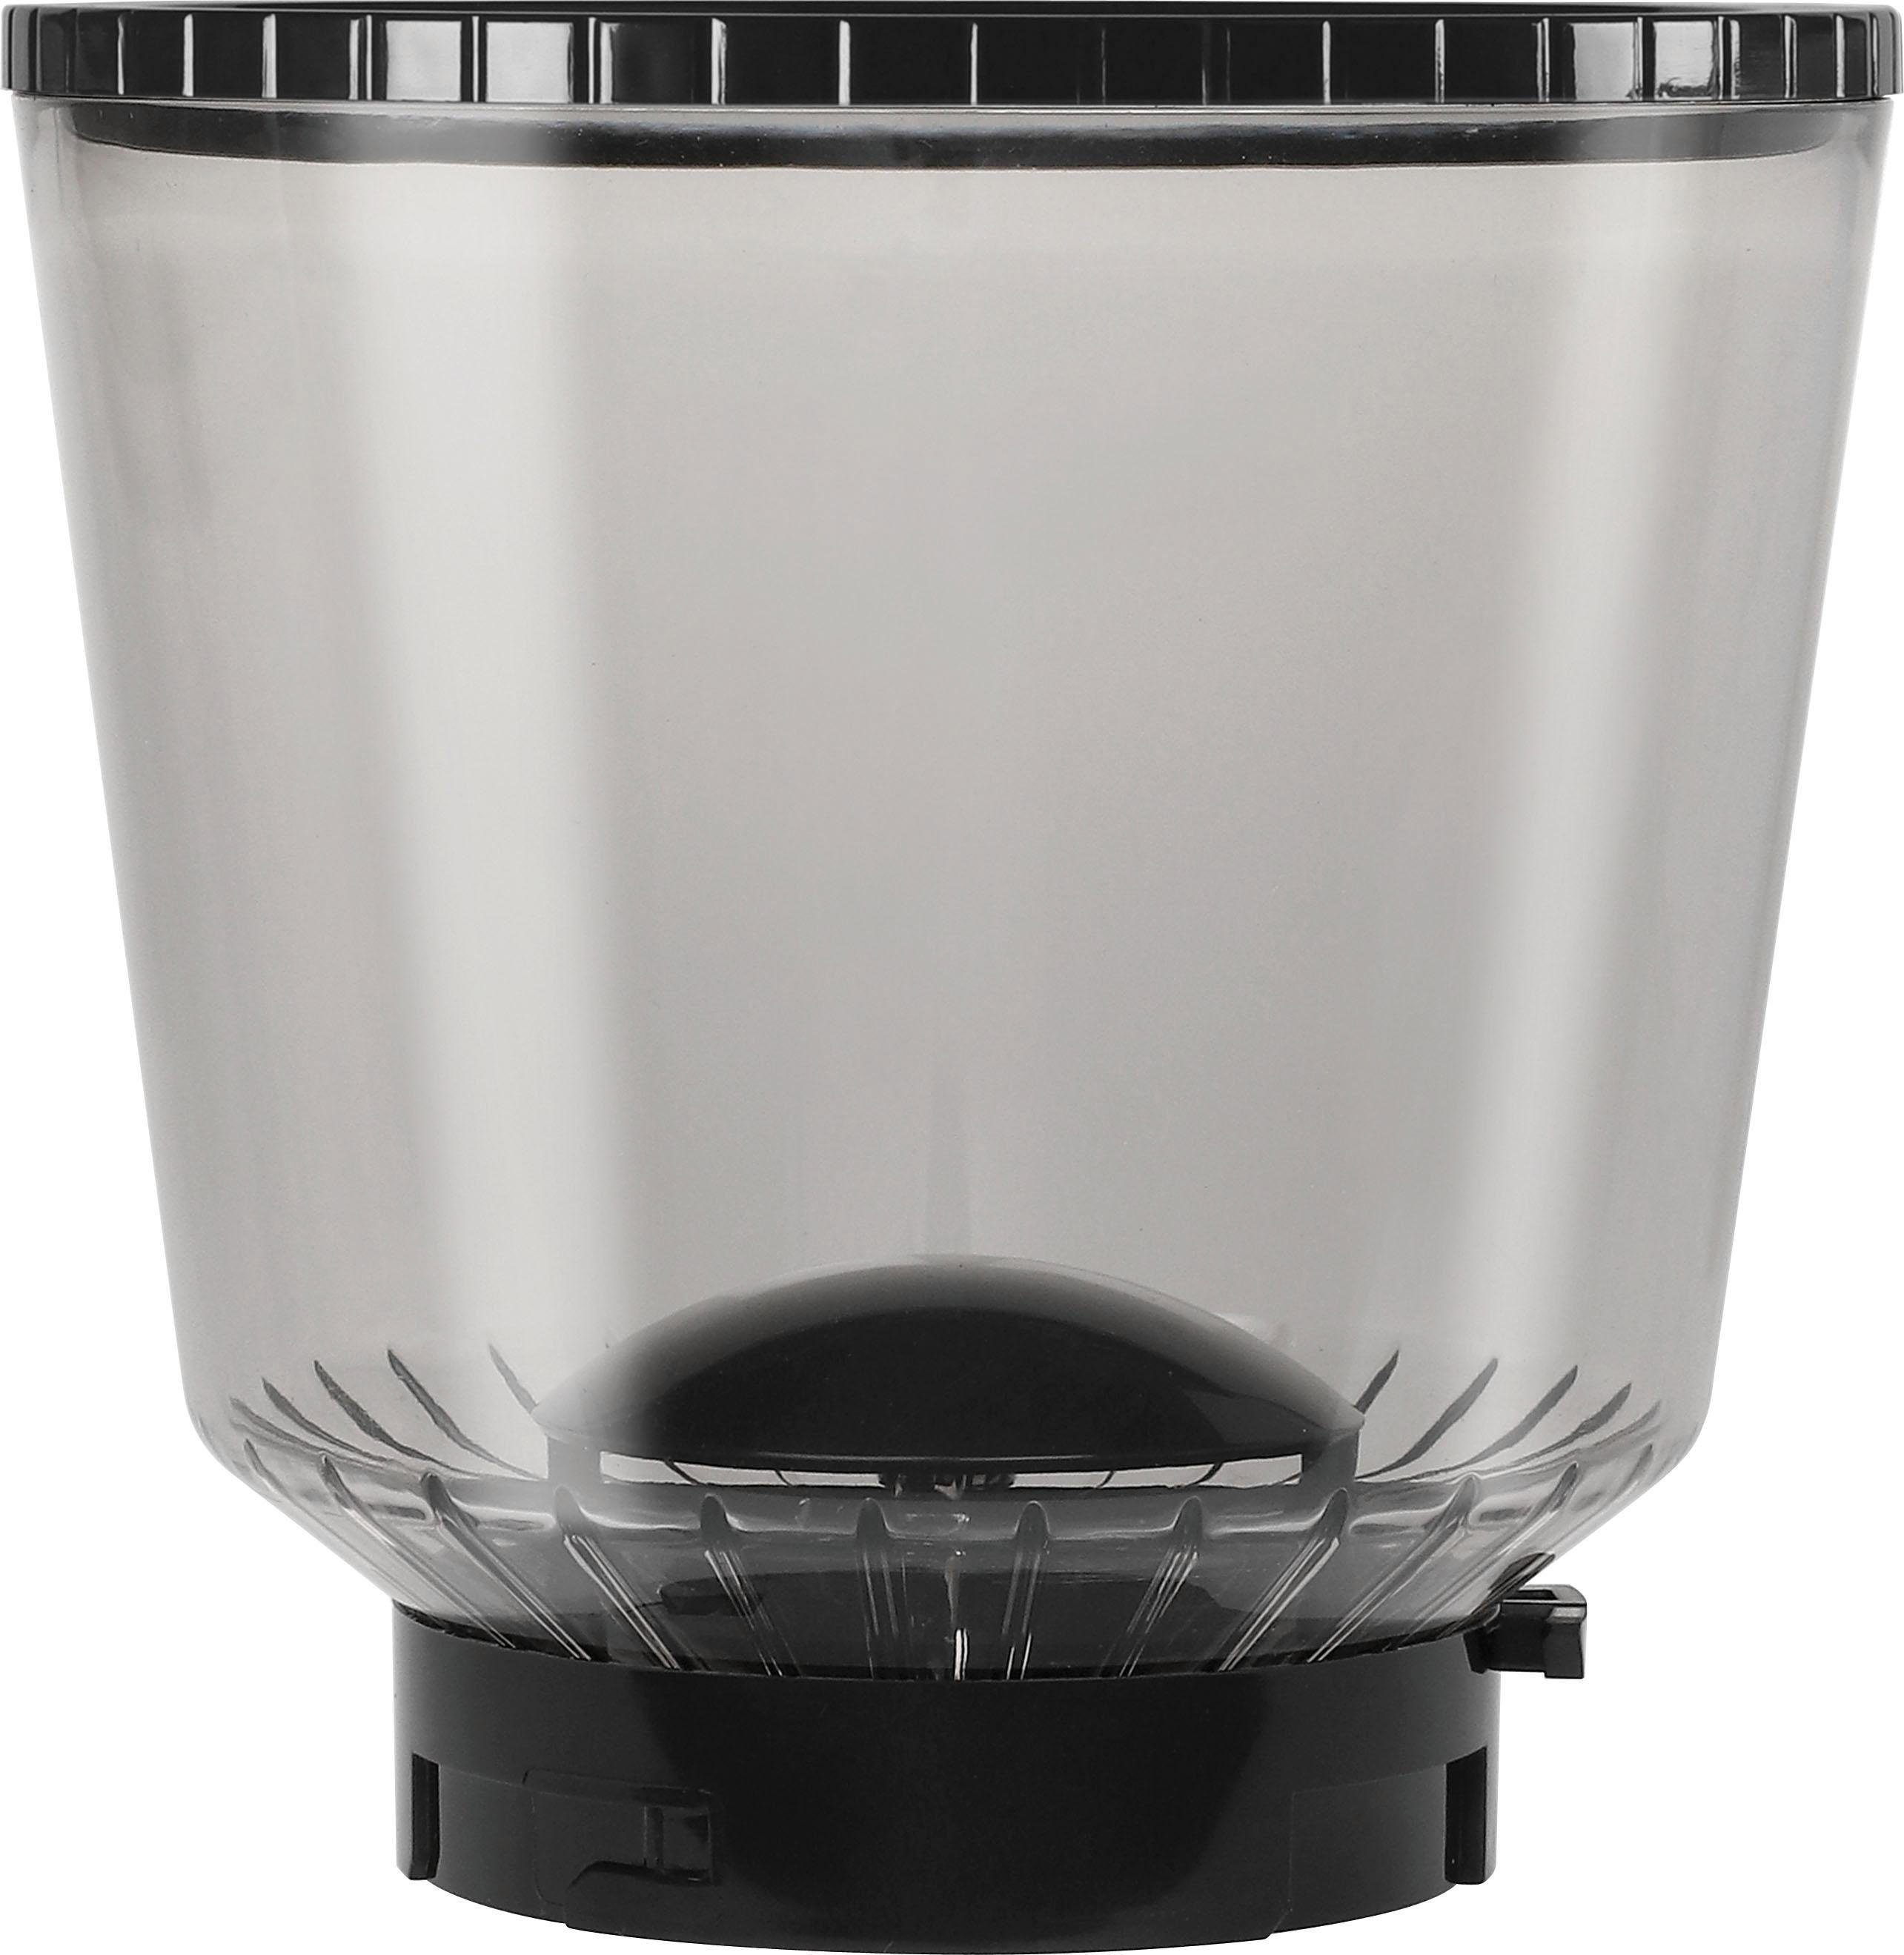 Melitta Kaffeemühle schwarz-Edelstahl, 375 W, Calibra Kegelmahlwerk, Bohnenbehälter 1027-01 g 160